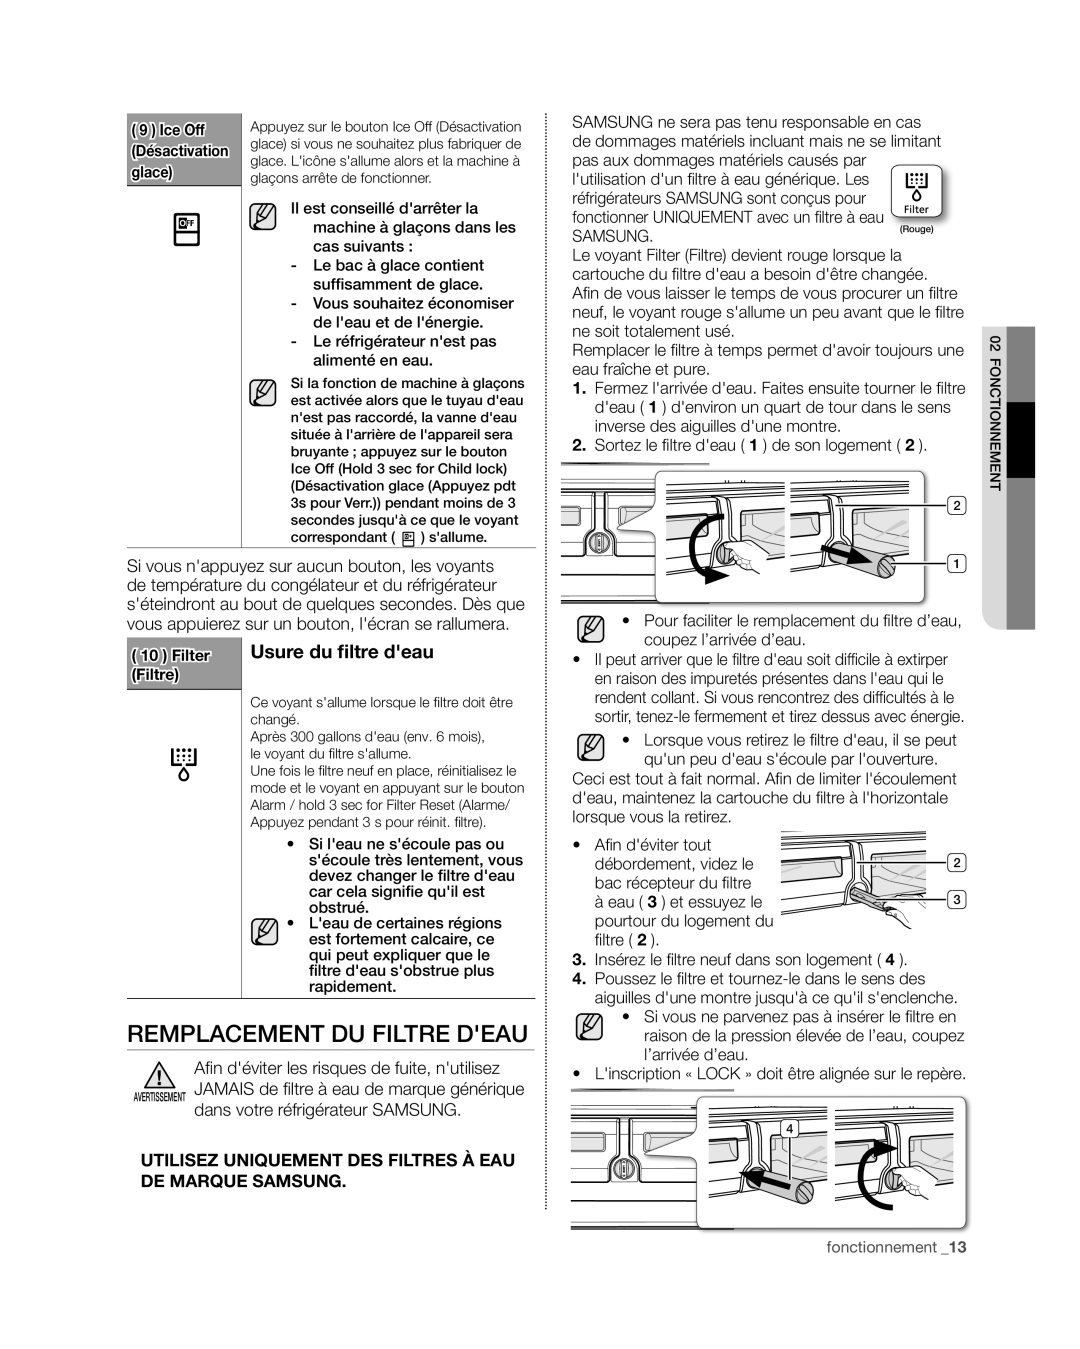 Samsung RF4267HA user manual Remplacement du filtre deau, Usure du filtre deau 